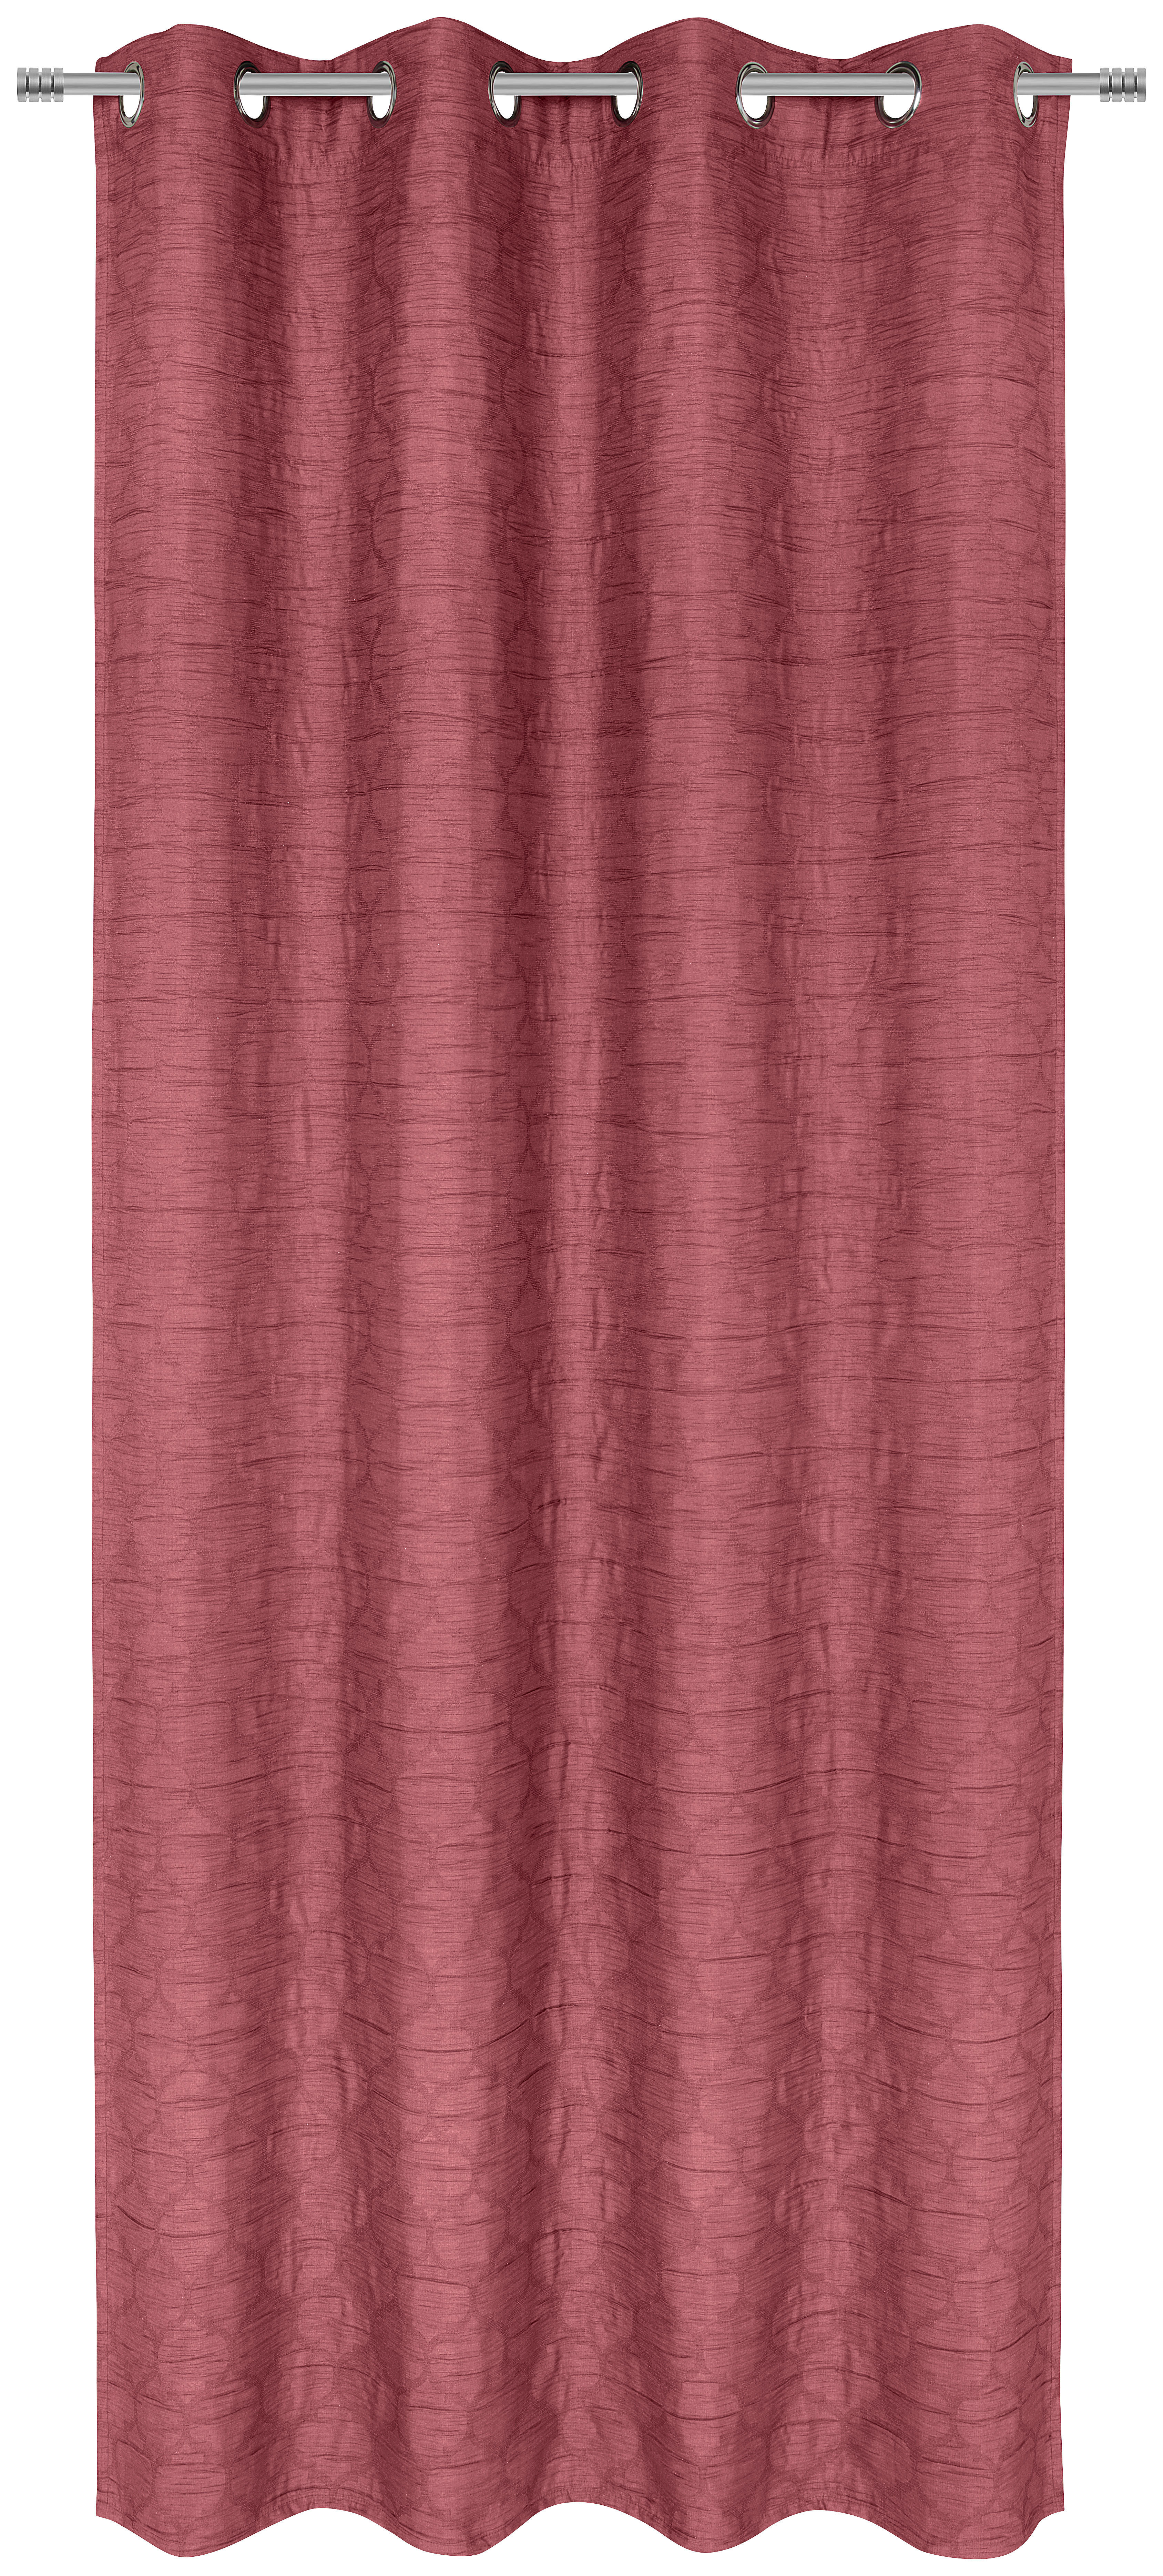 ÖSENSCHAL black-out (lichtundurchlässig) 135/245 cm   - Beere, Basics, Textil (135/245cm) - Esposa